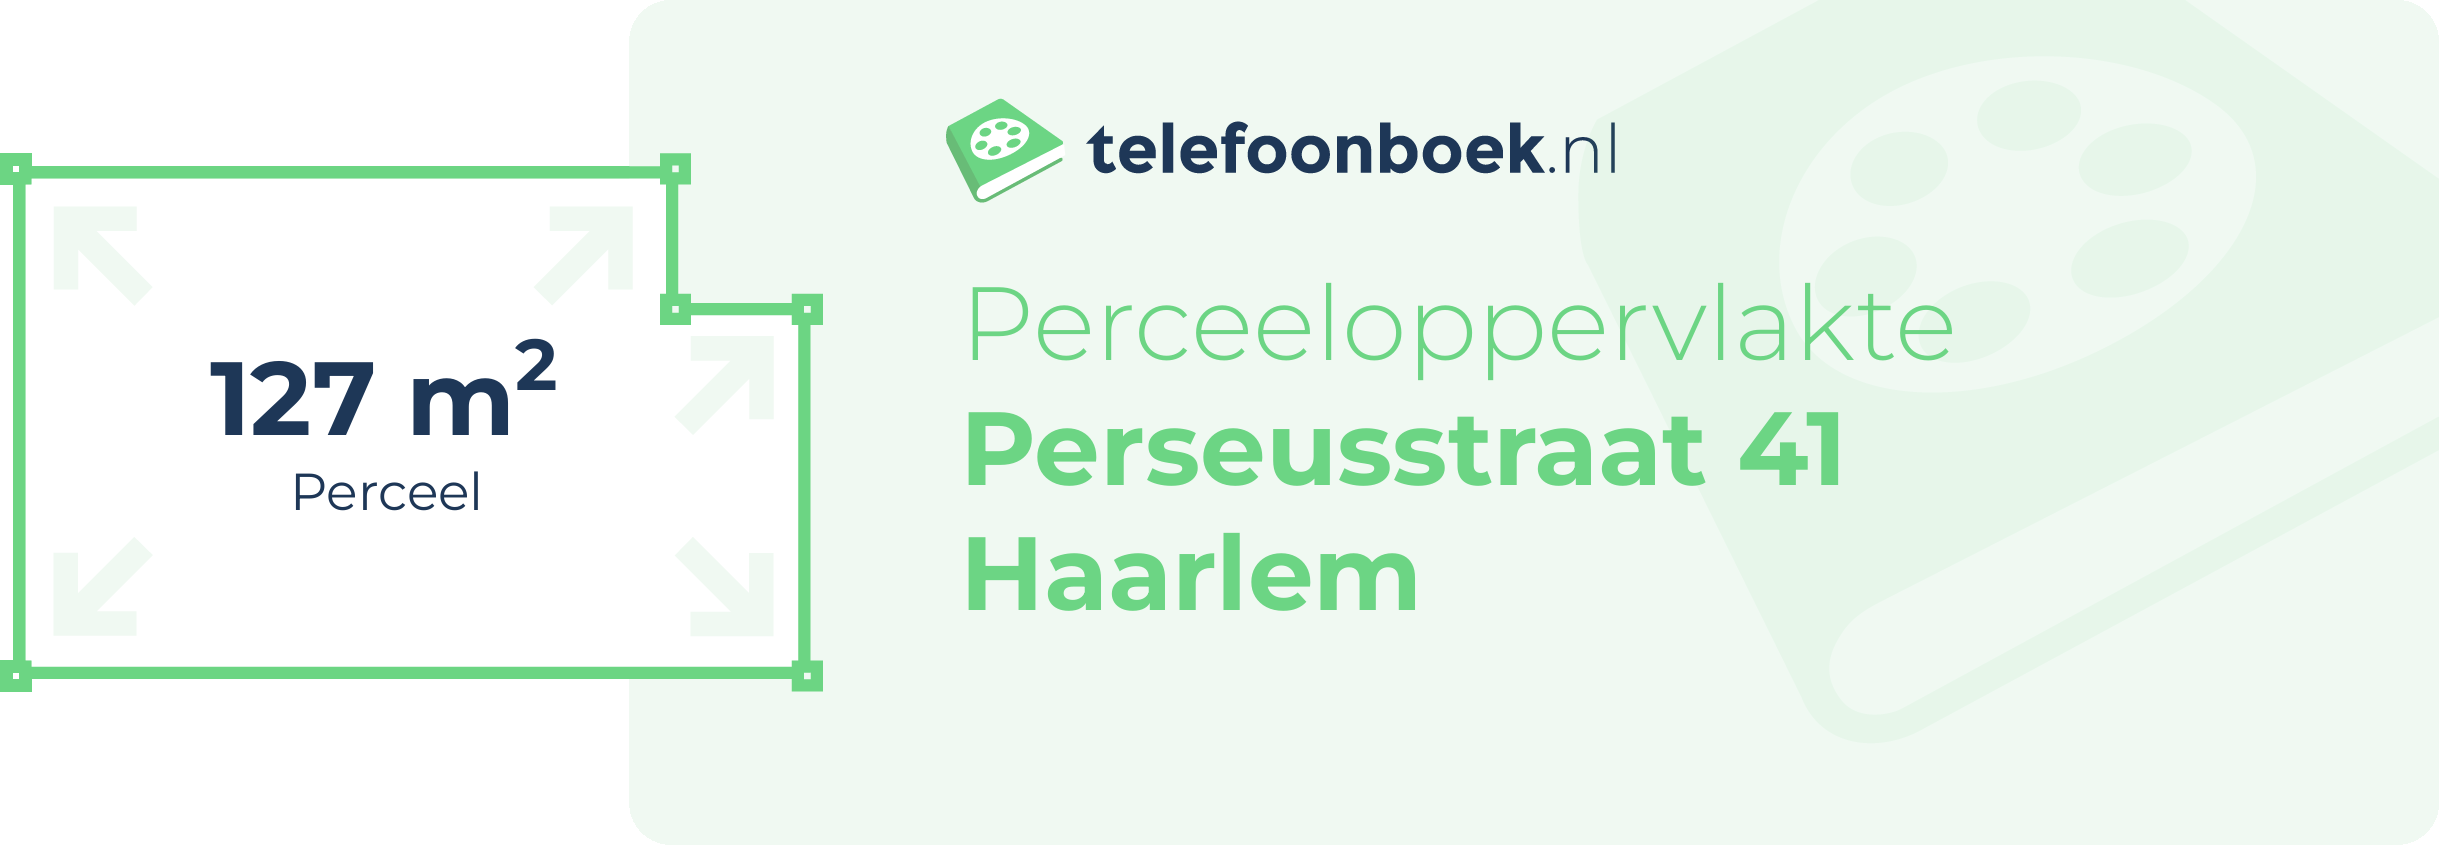 Perceeloppervlakte Perseusstraat 41 Haarlem